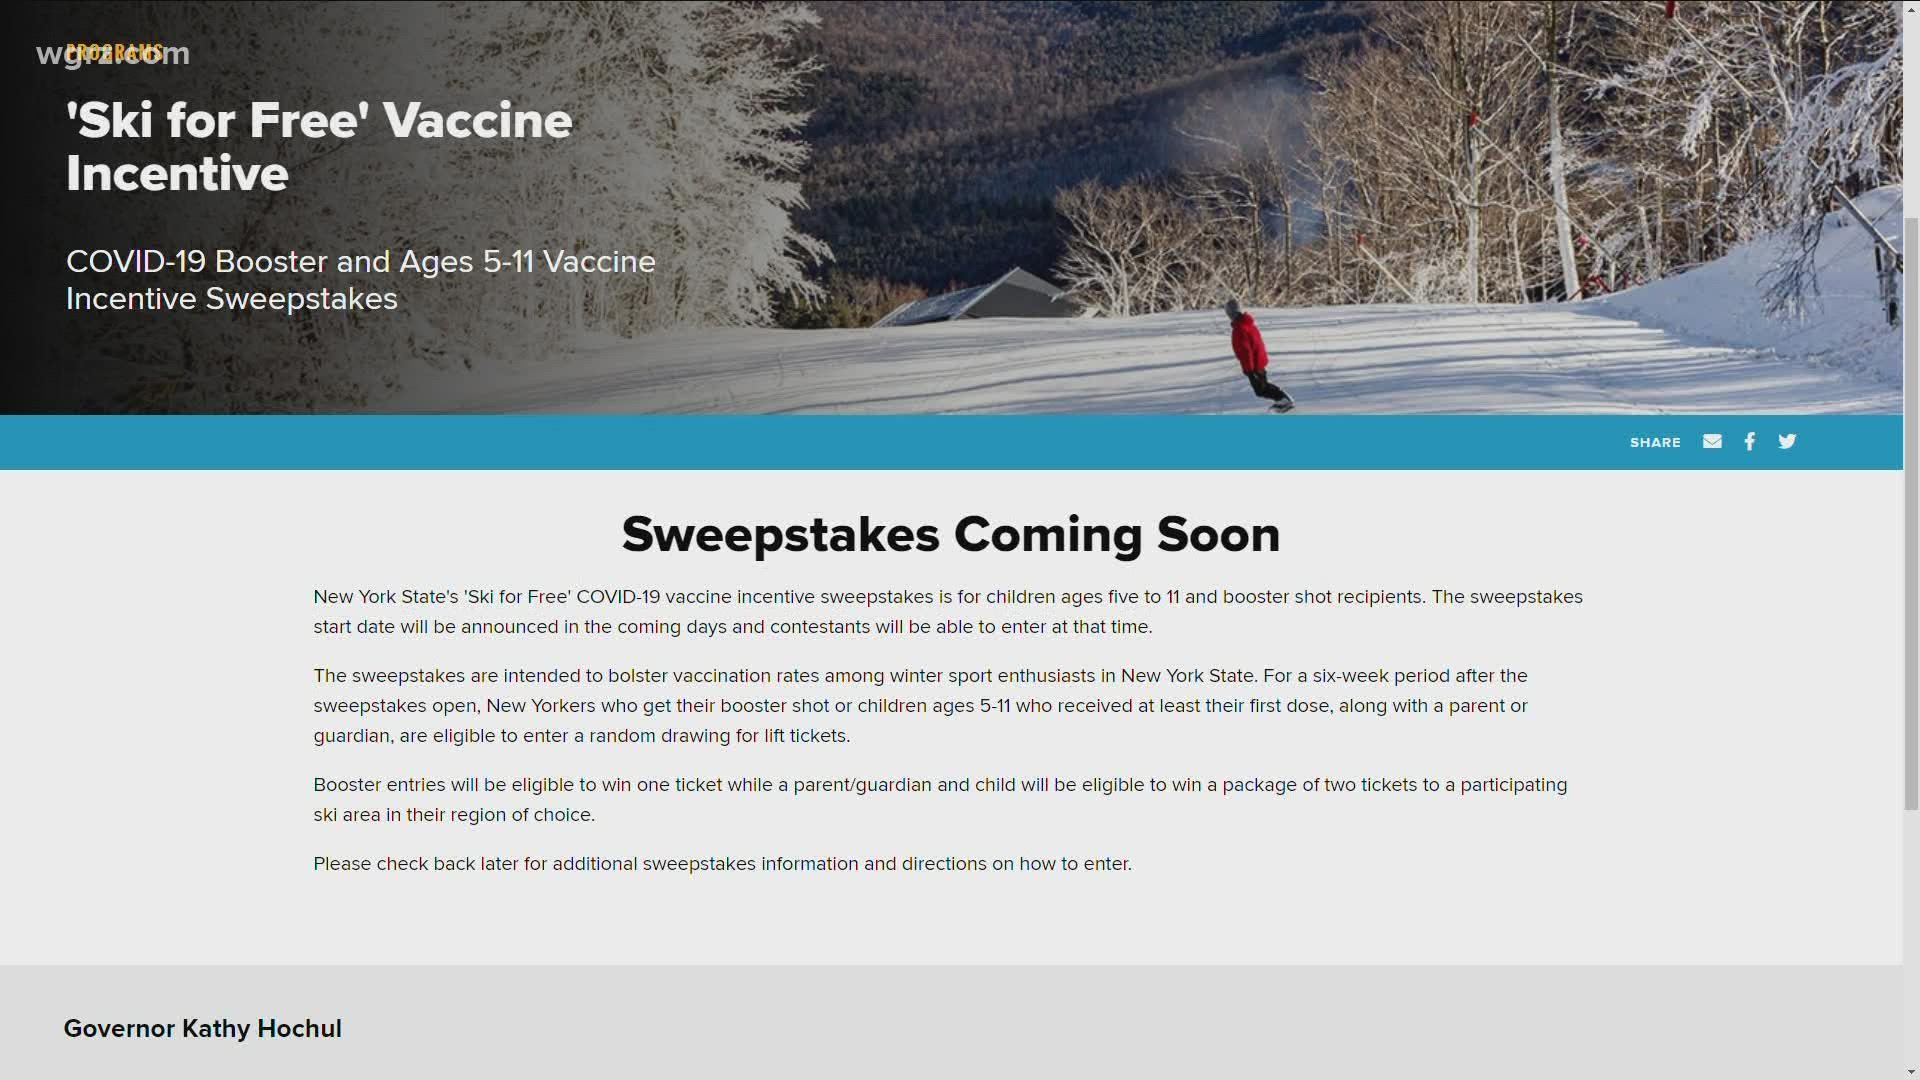 'Ski for Free' sweepstakes now open